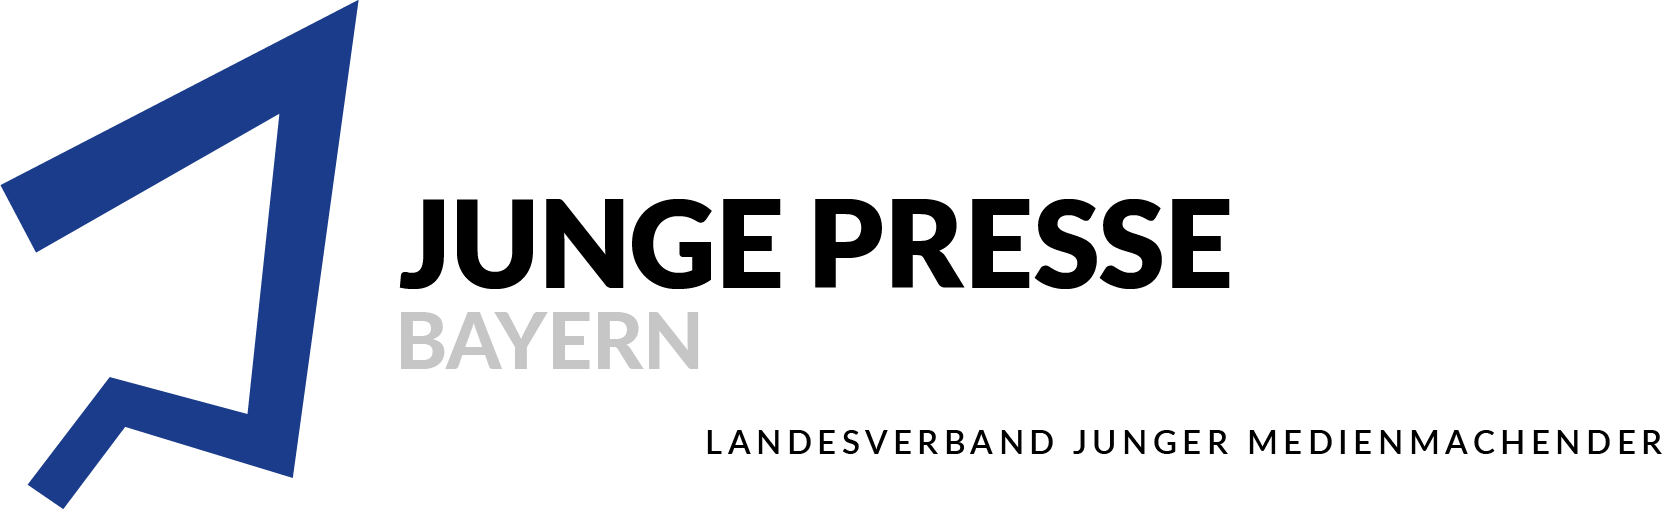 Logo des Junge Presse Bayern e.V.